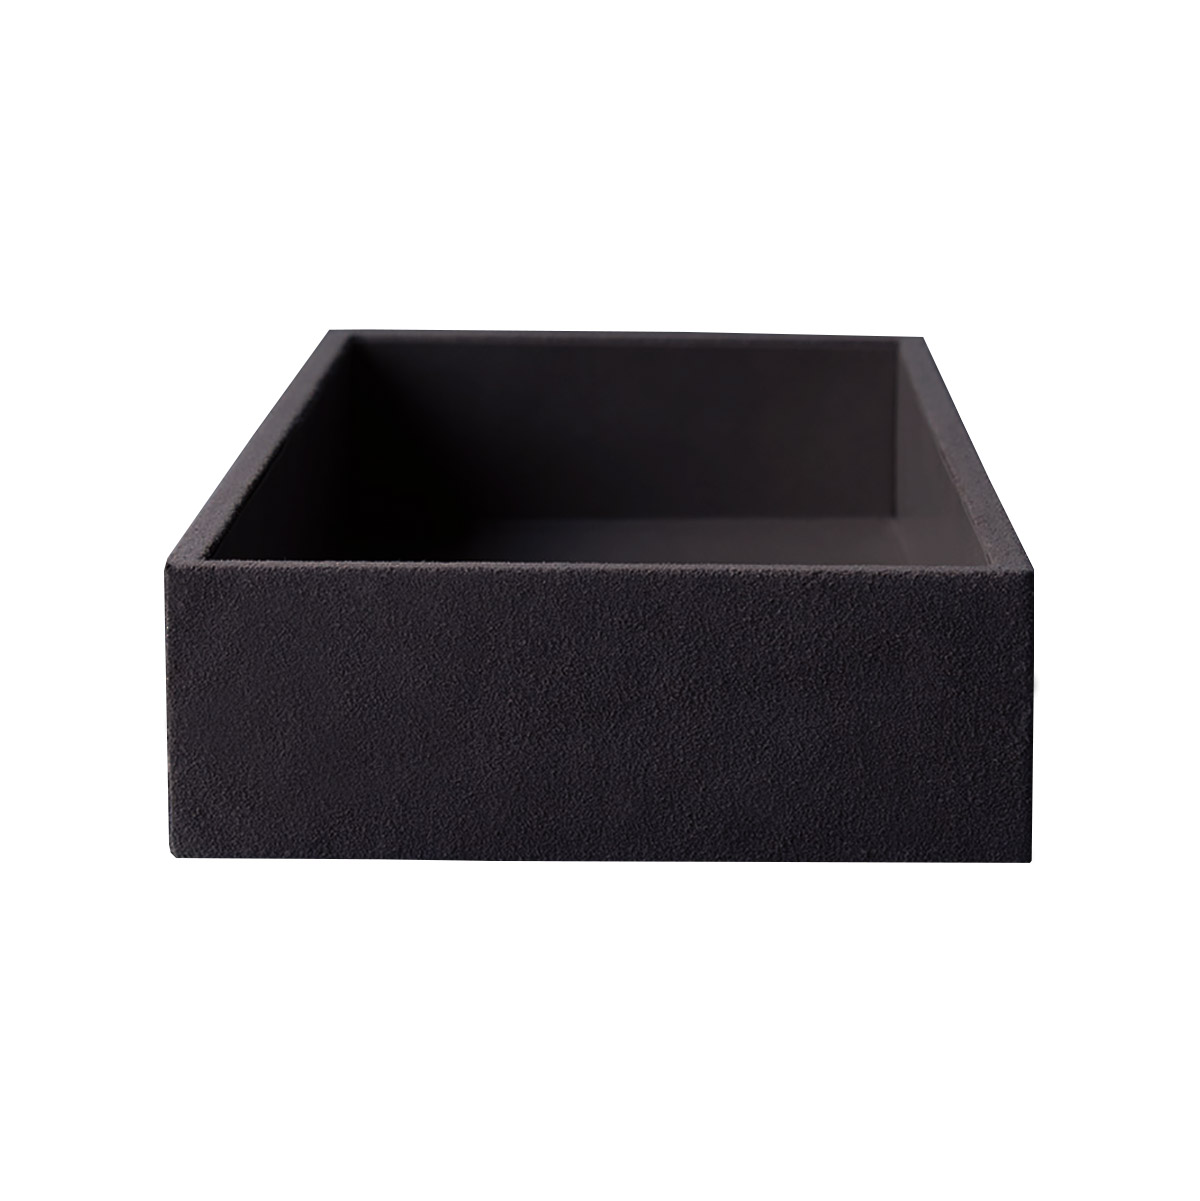 Black suede display box